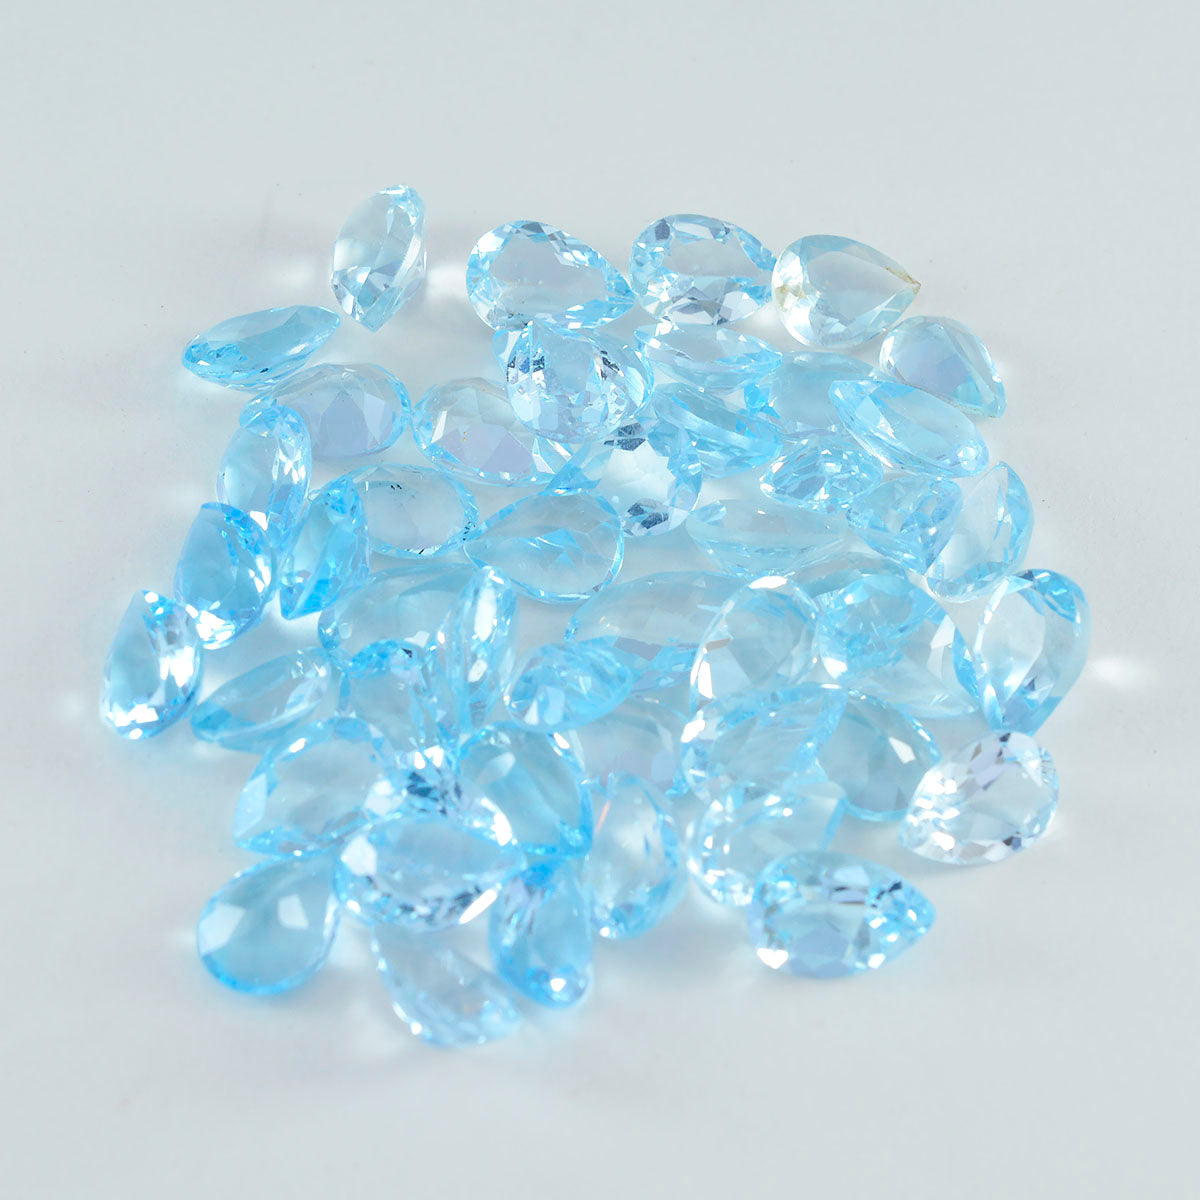 riyogems 1 шт. настоящий синий топаз ограненный 3x5 мм грушевидной формы красивый качественный камень